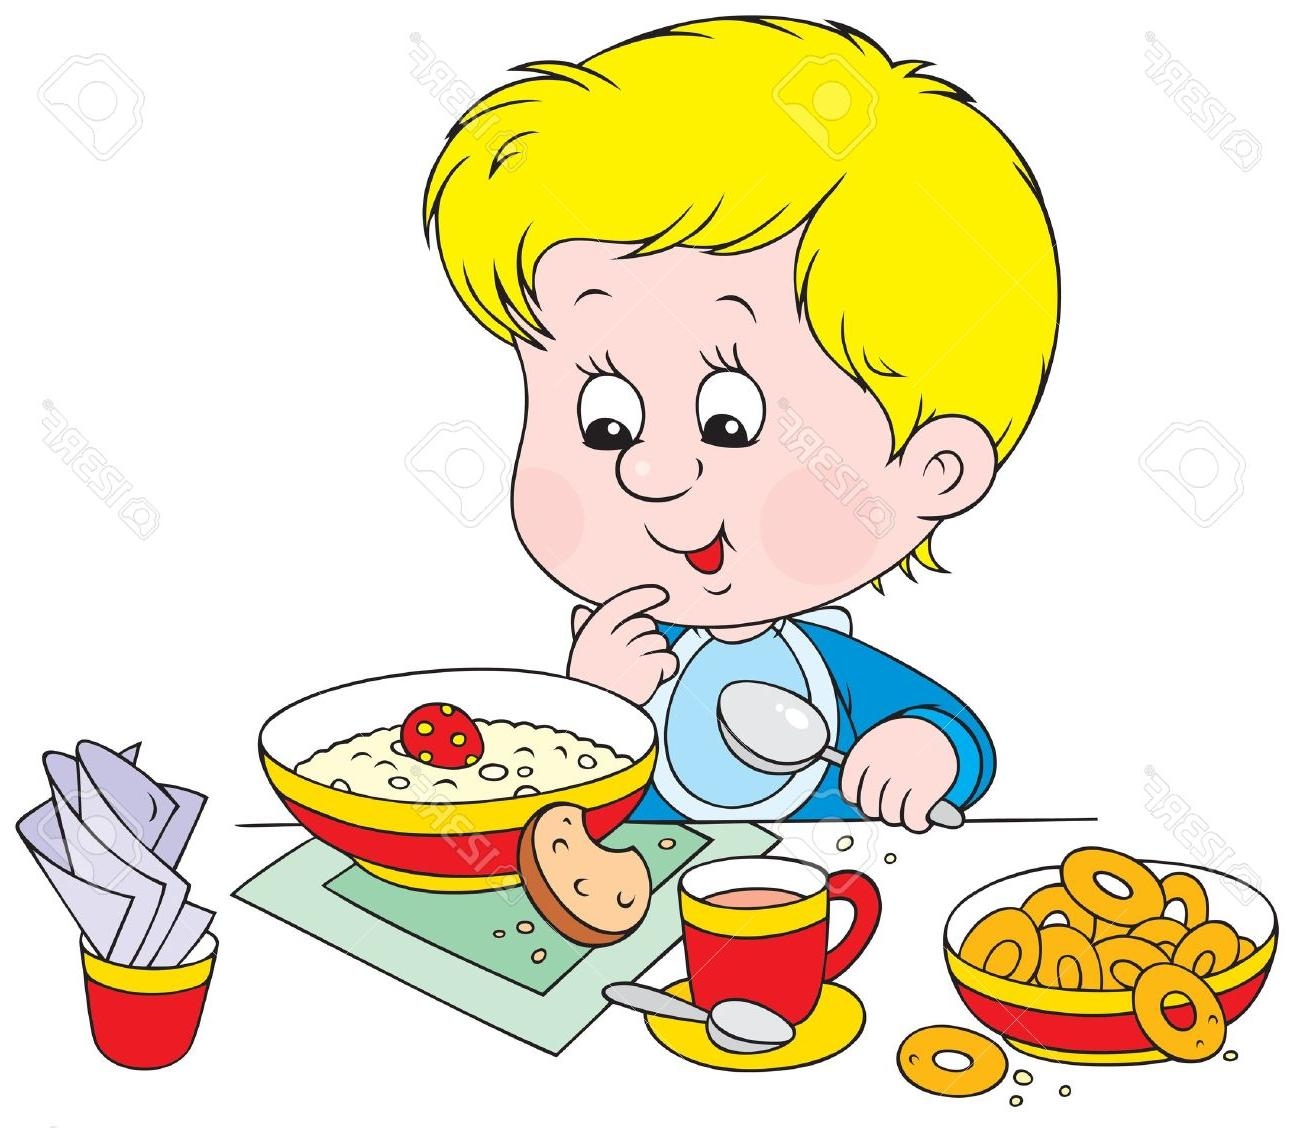 Breakfast clipart boy, Picture #299381 breakfast clipart boy